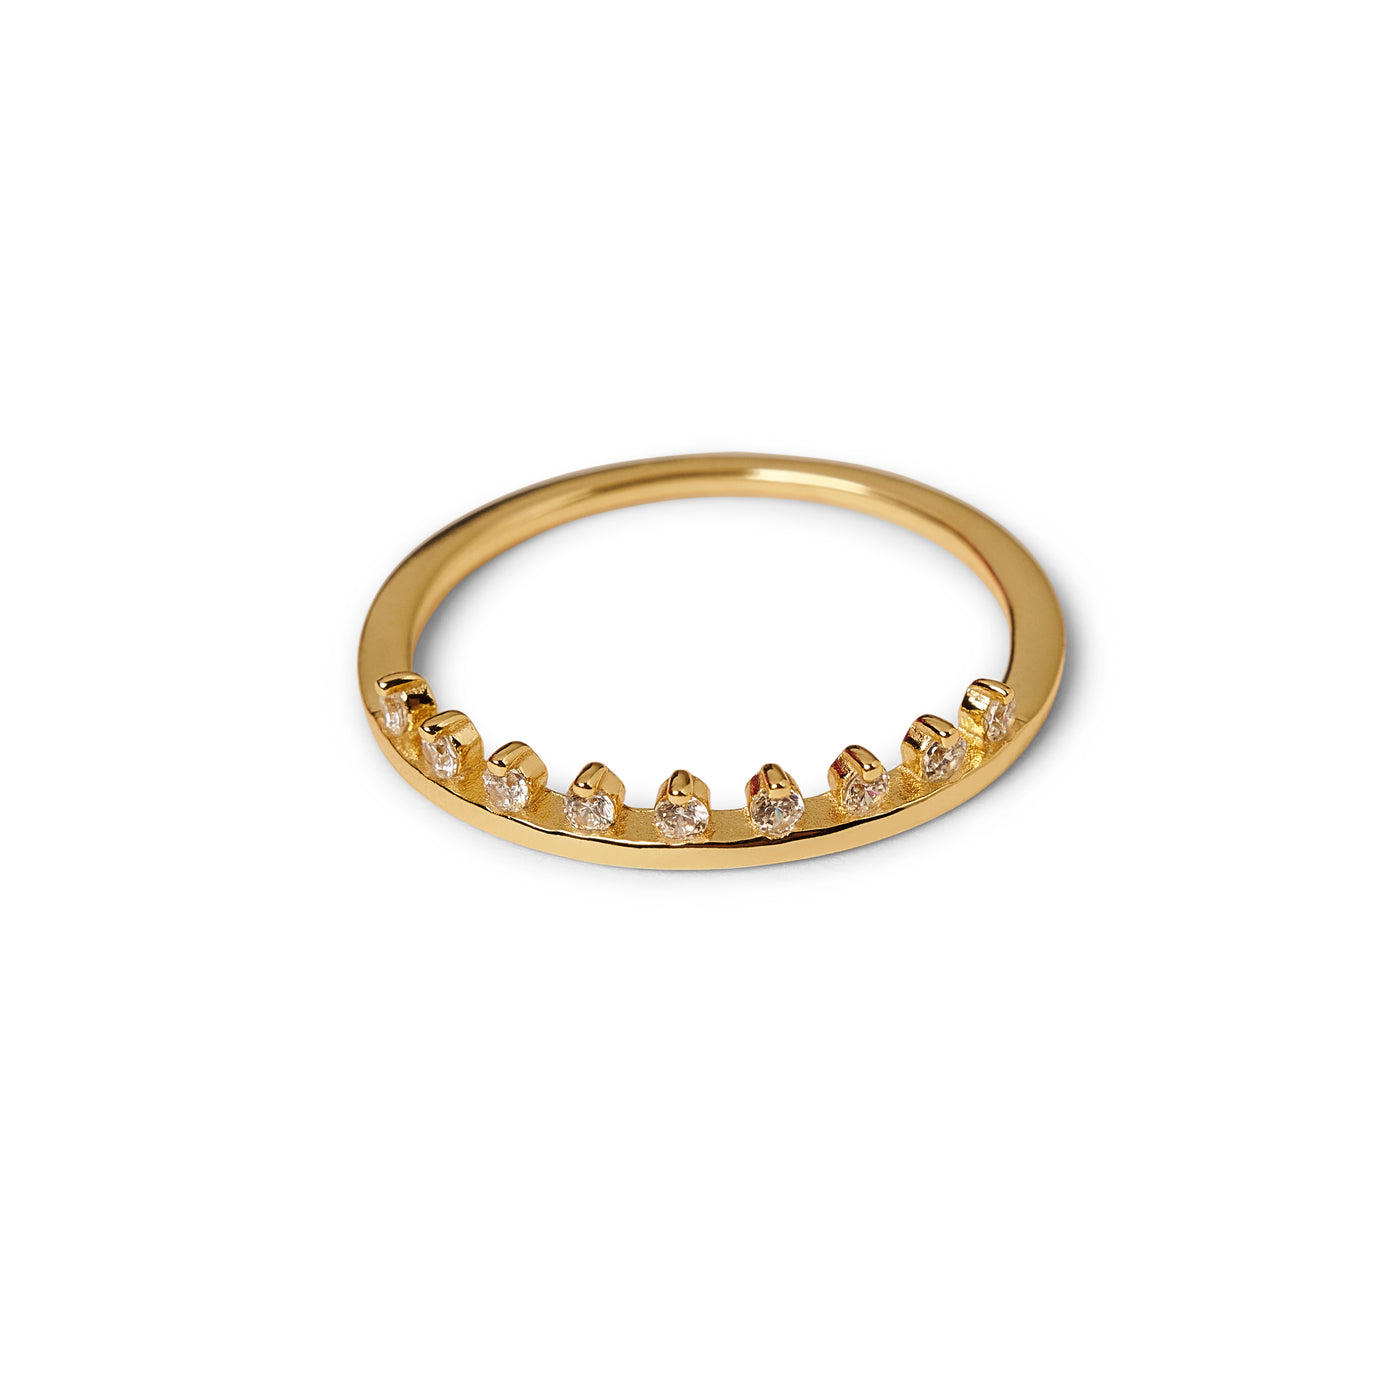 Gemstone Crown Ring